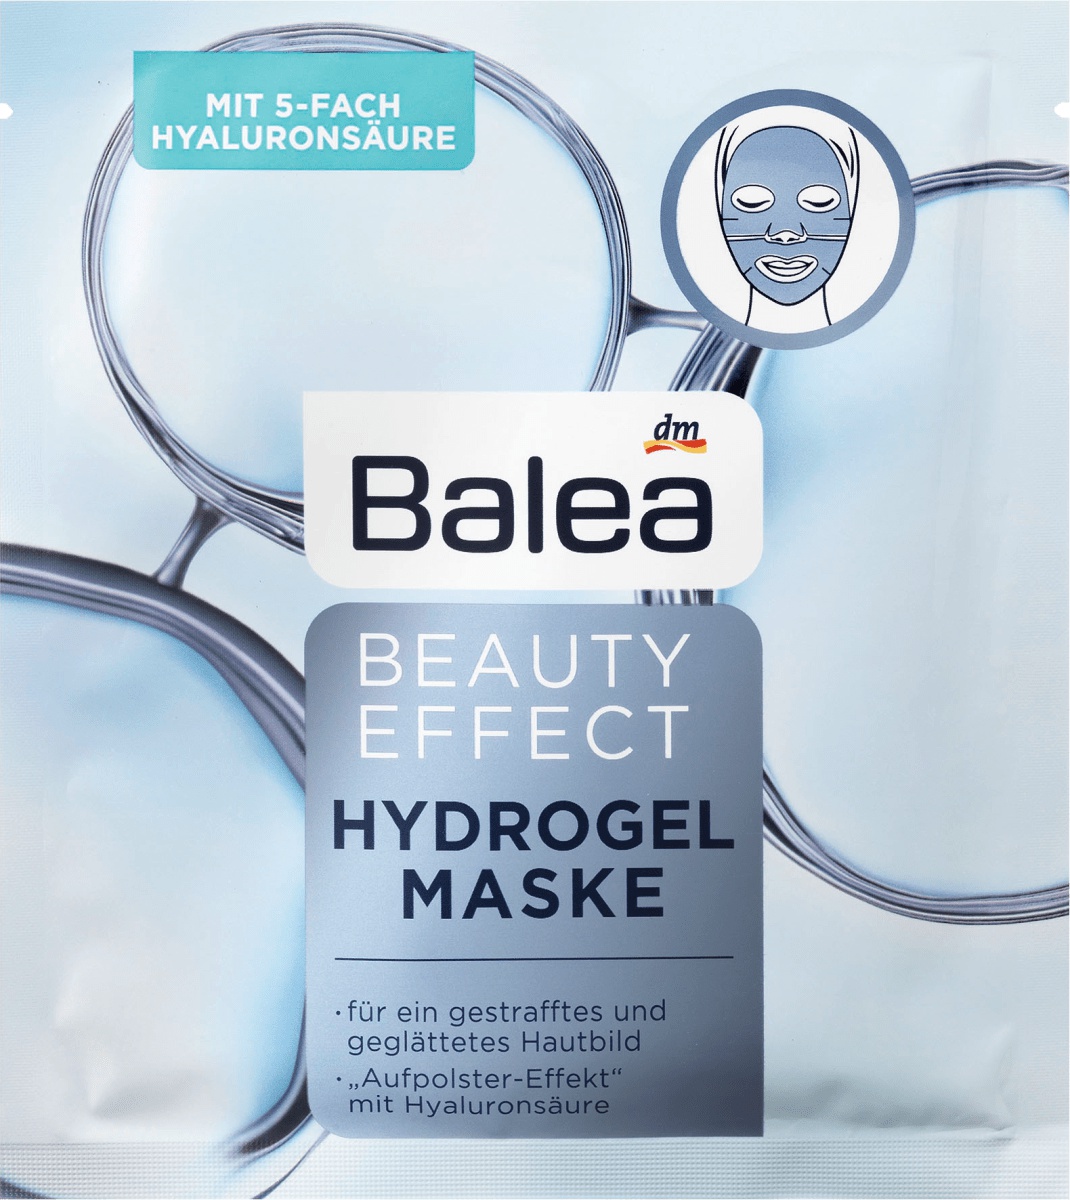 Balea Beauty Effect Hydrogelmaske